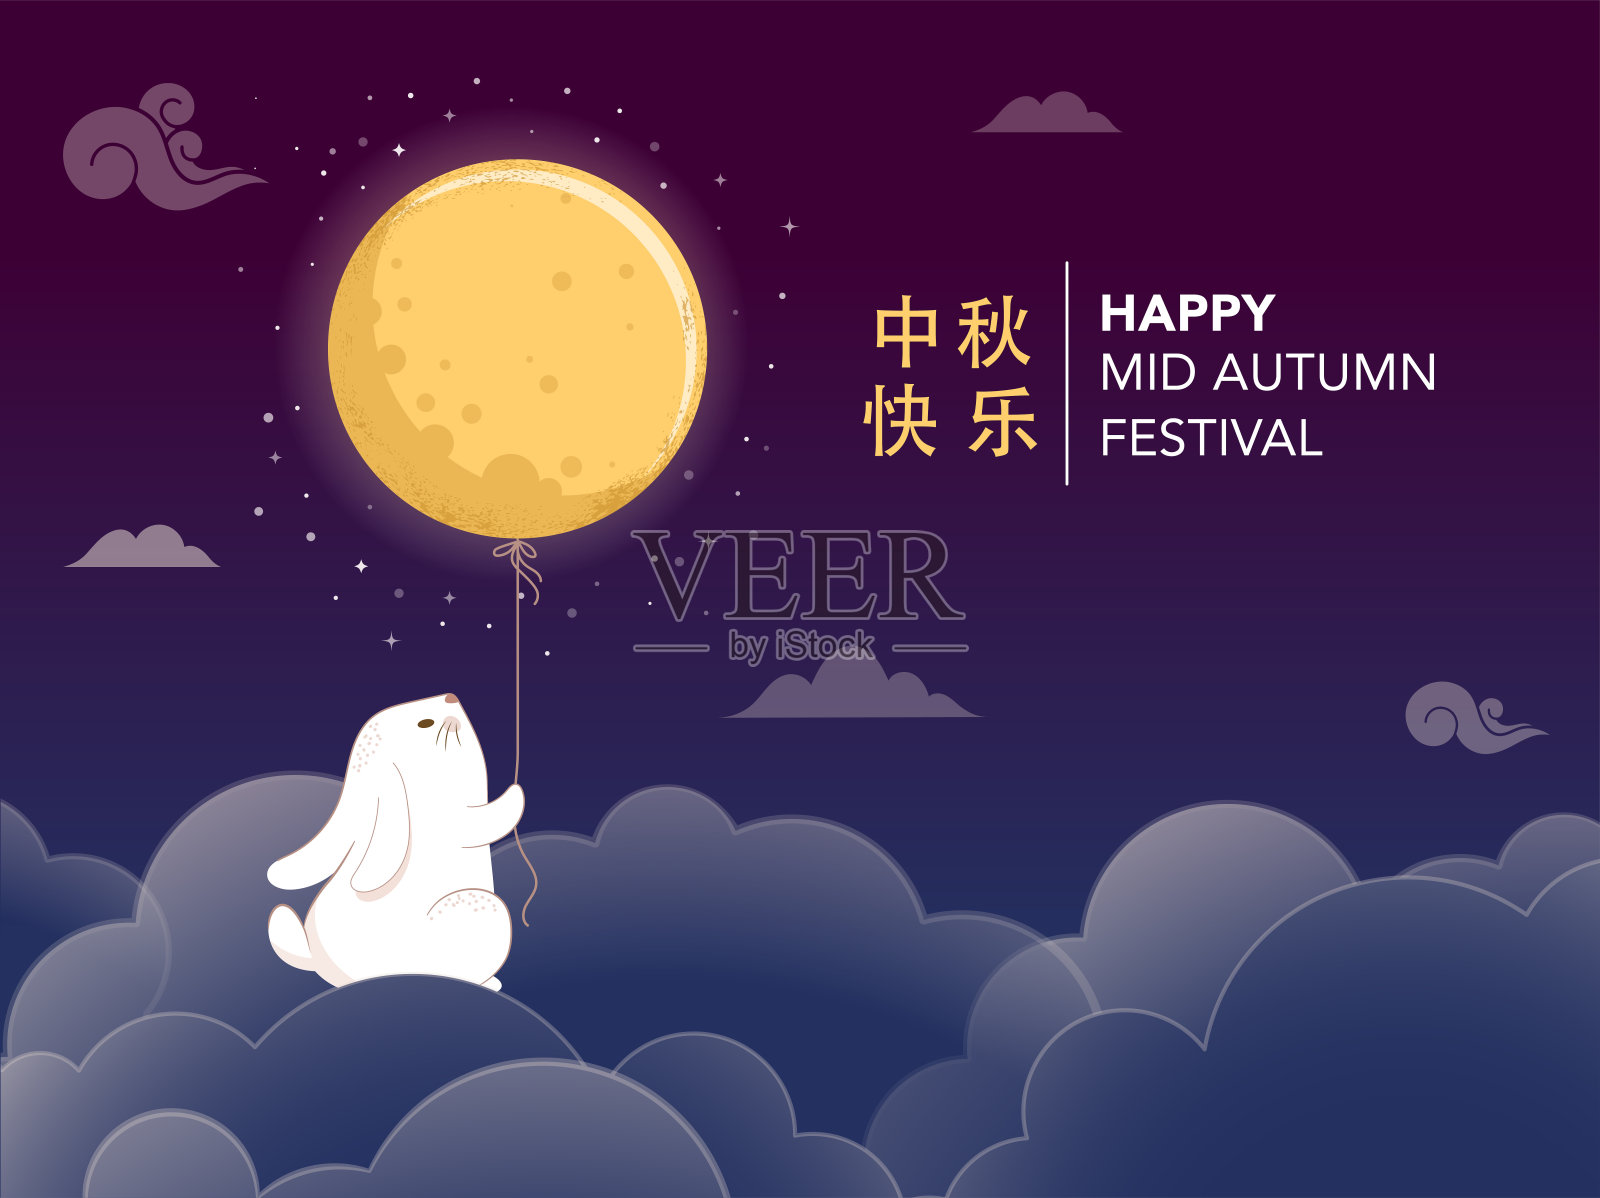 中秋节概念设计与可爱的兔子，兔子和月亮插图。中国人、人、亚洲人庆祝中秋节。中秋快乐设计模板素材